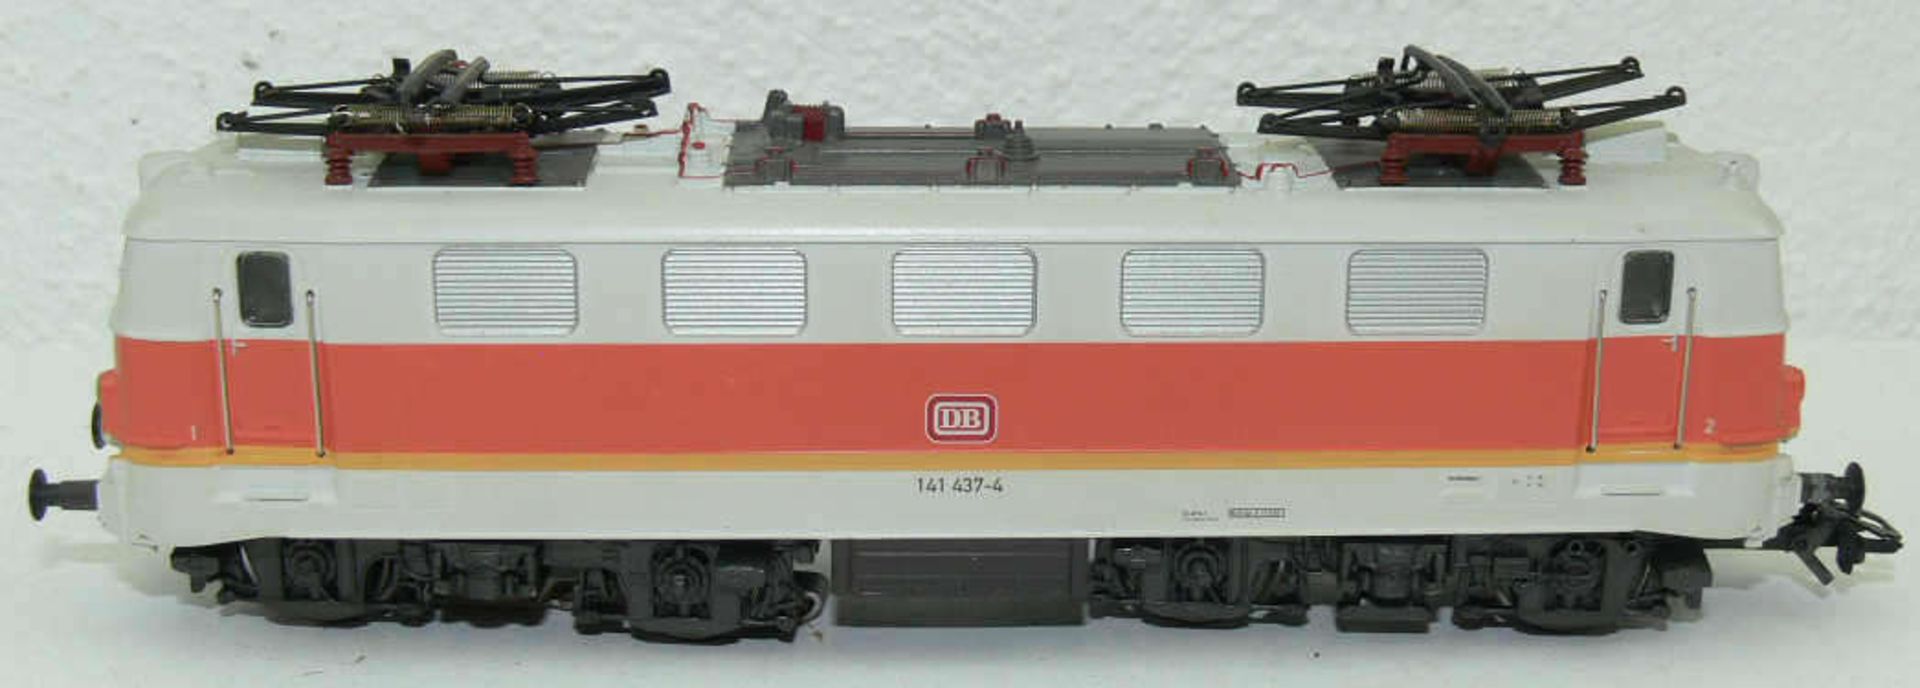 Märklin H0, E - Lokomotive BR 141, BN 141 437-4, Guss. Mit leichten Laufspuren.